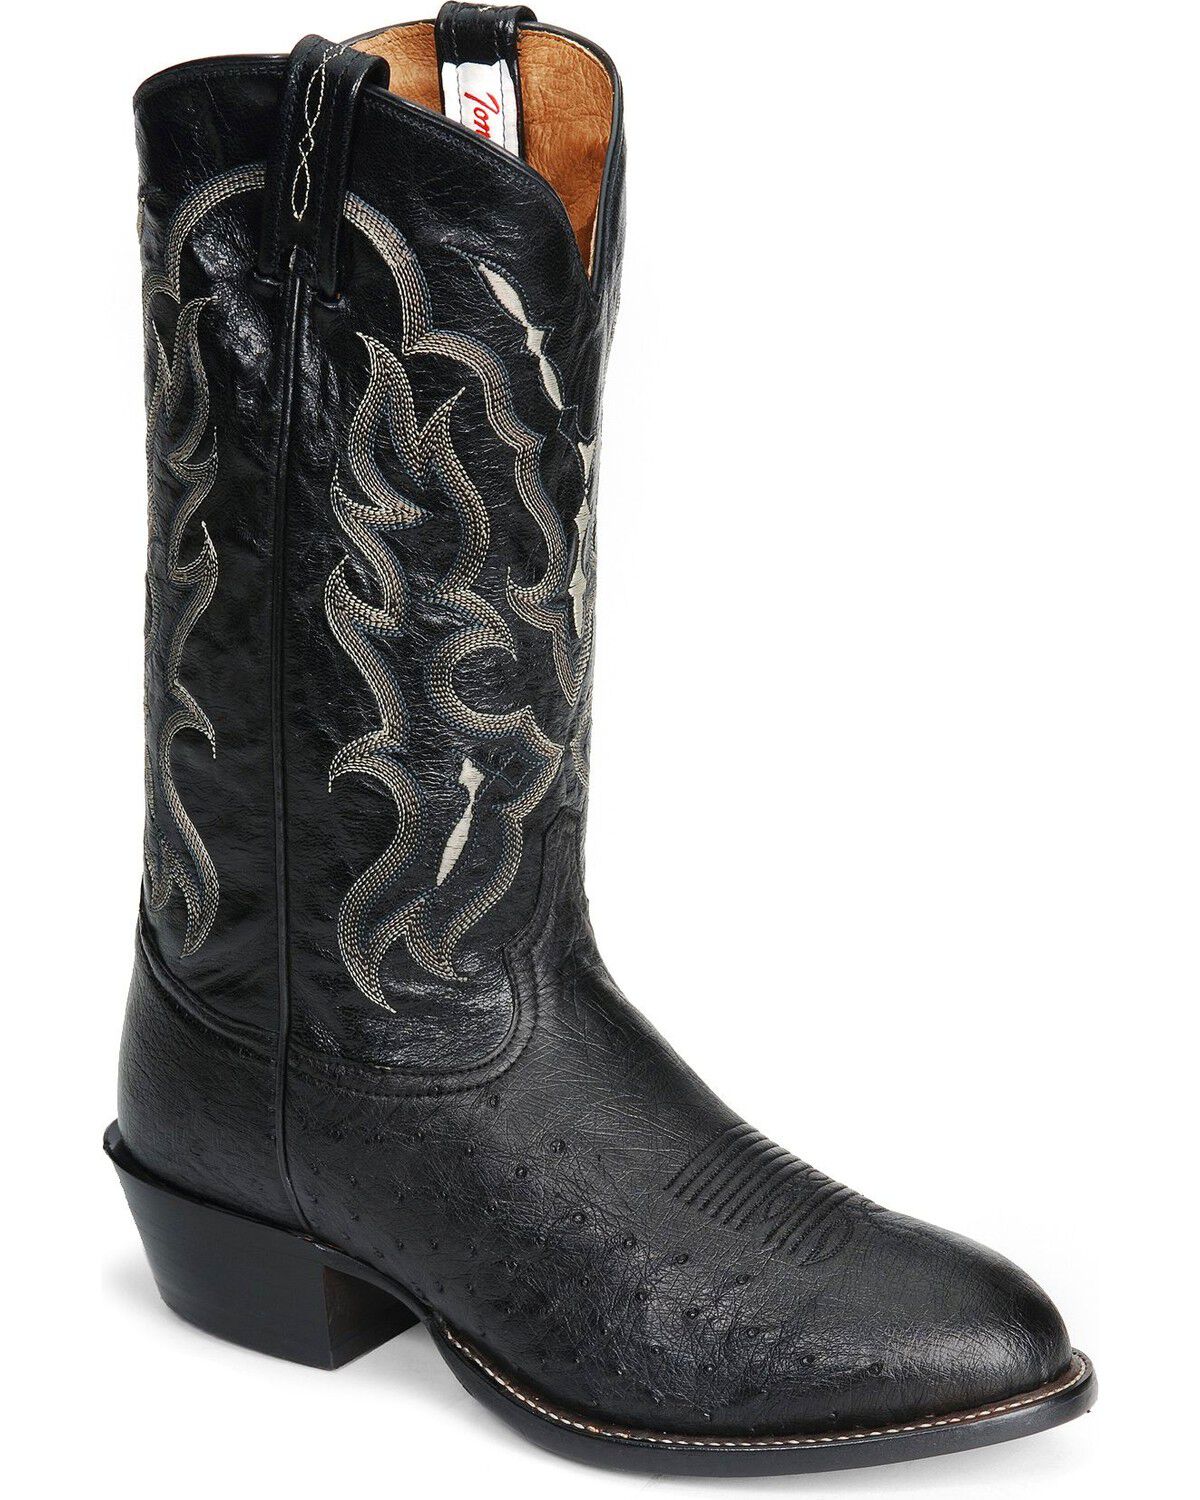 Tony Lama Boots: Cowboy Boots, Cowboy 